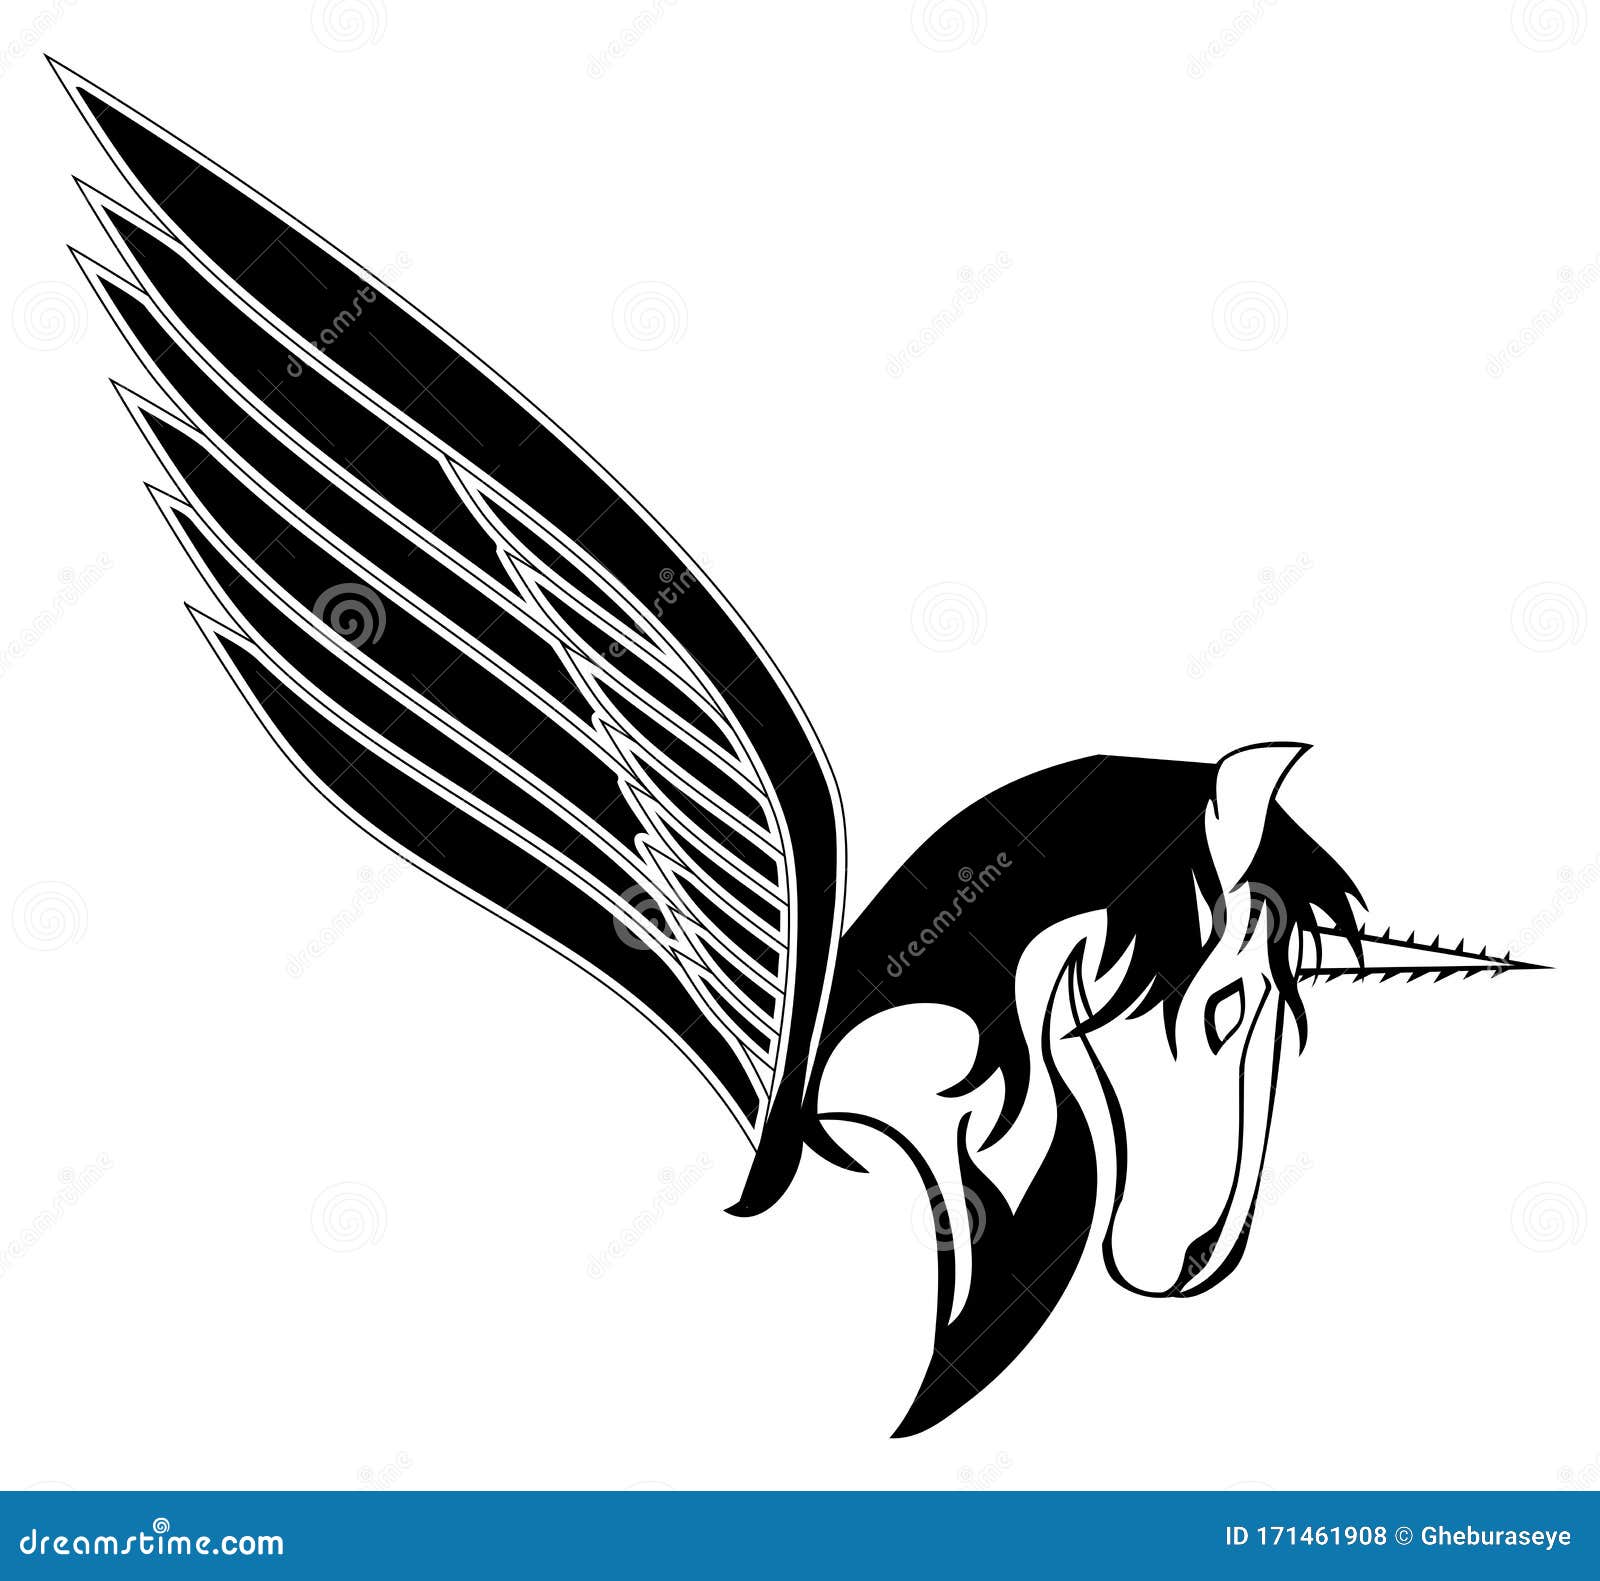 Winged Unicorn Stylized Black And White Isolated Stock Illustration